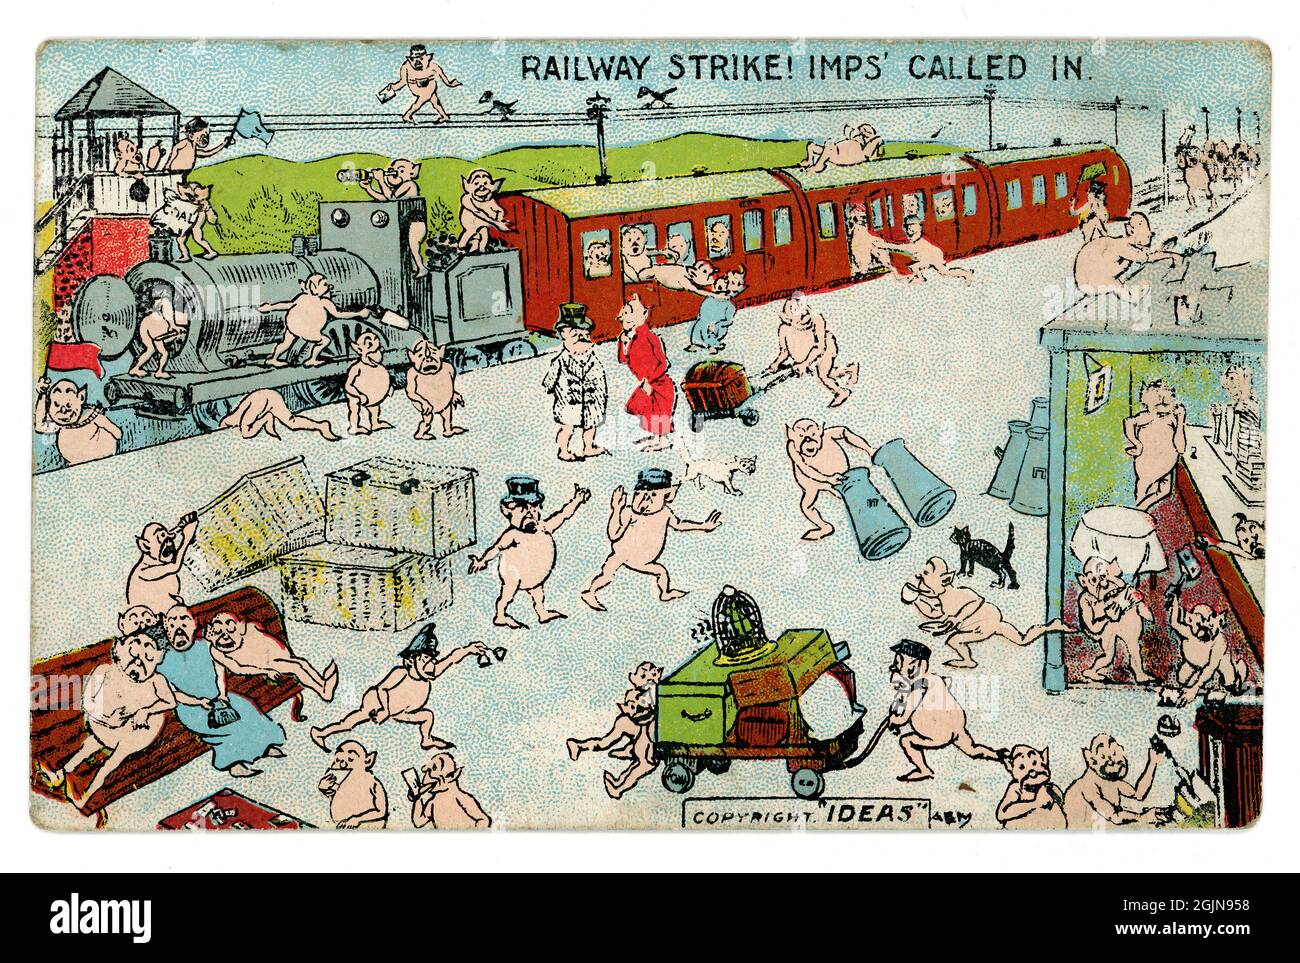 Carte postale originale du début des années 1900, « les imp ont appelé pour aider », causant le chaos lors d'une grève ferroviaire, la papeterie de locomotive à vapeur sur la plate-forme alors que les imp causent le chaos.1908, ROYAUME-UNI Banque D'Images